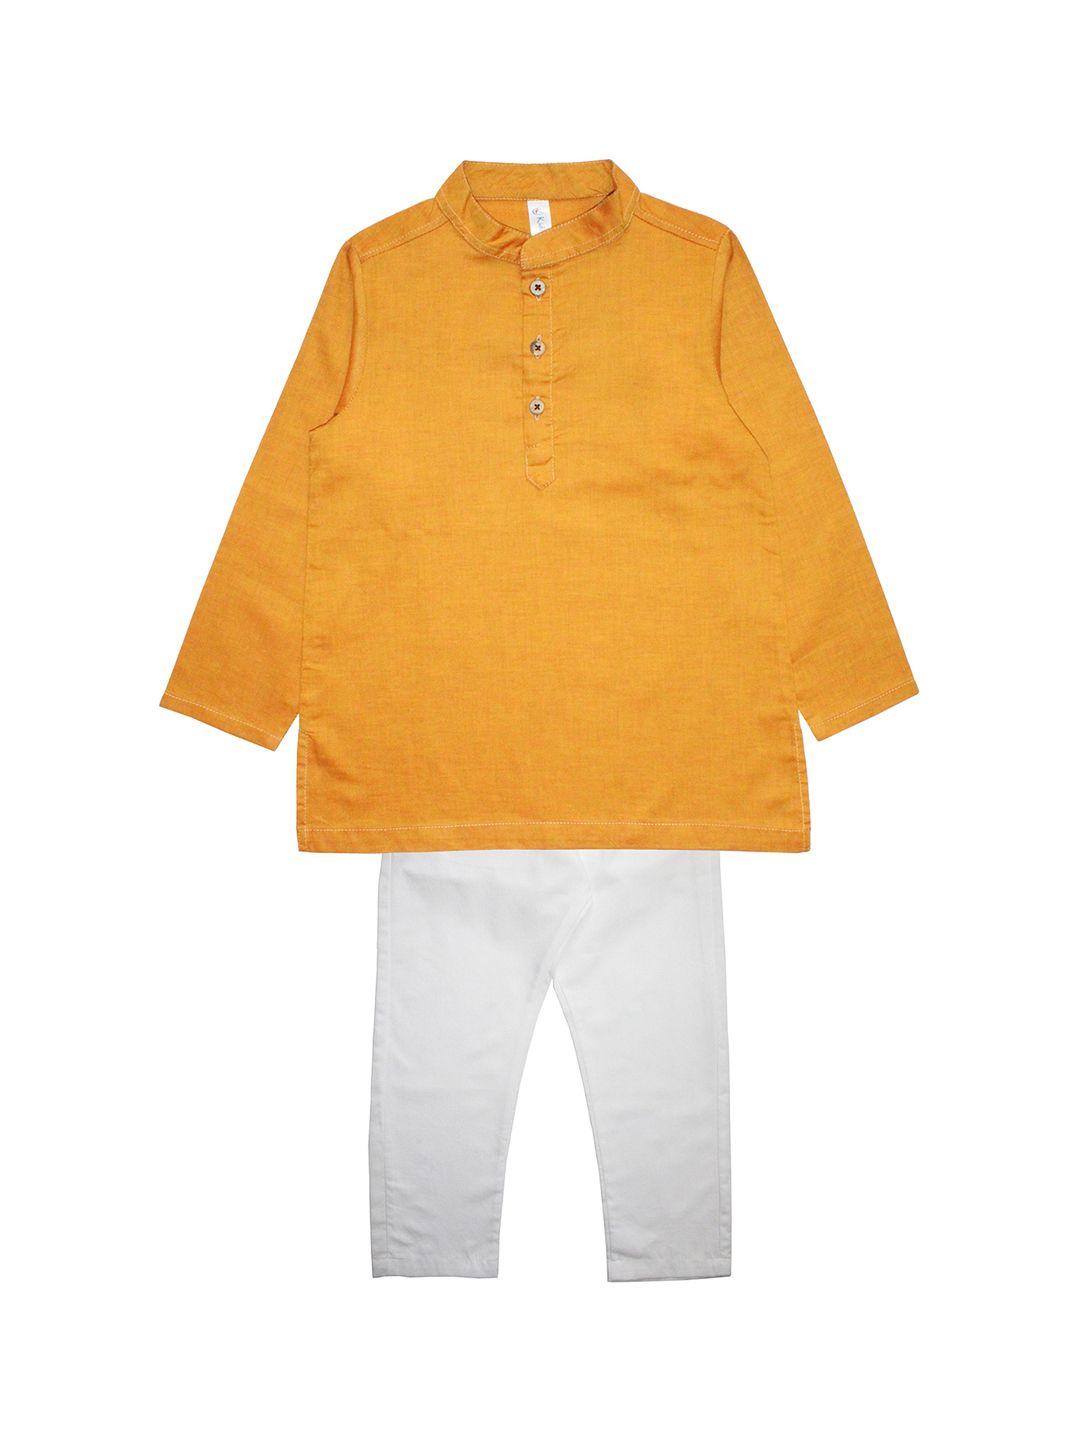 kiddopanti boys mustard yellow & white solid kurta with pyjamas